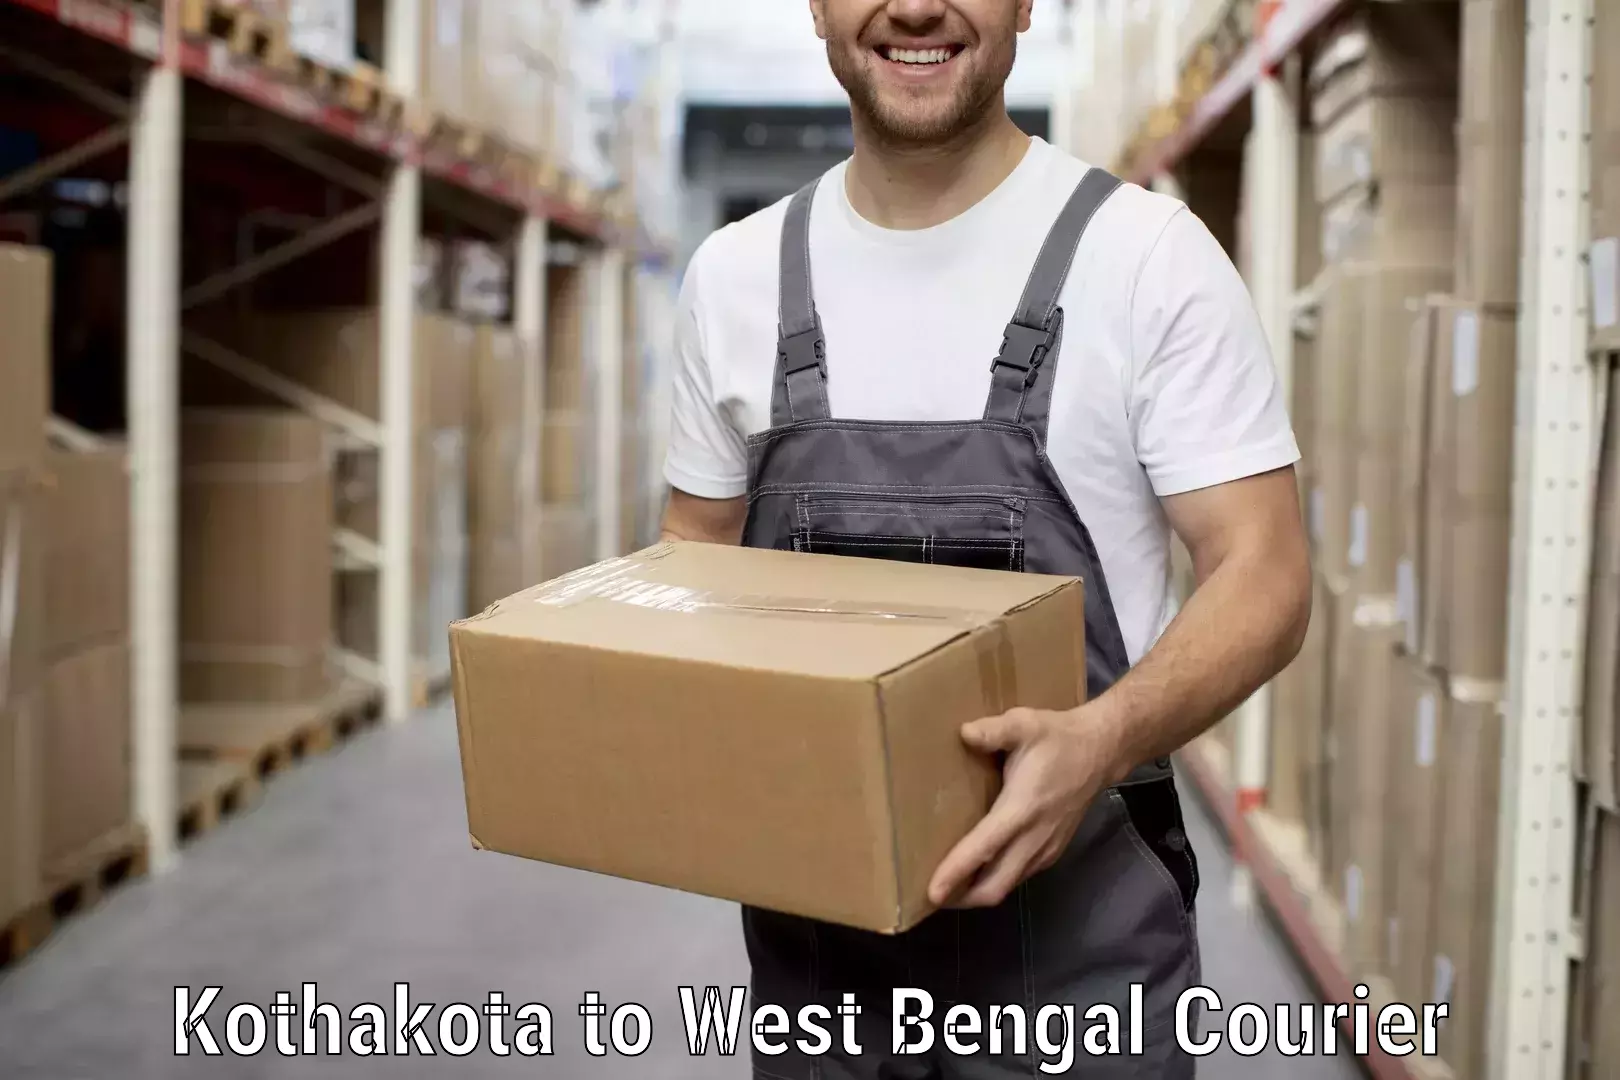 Household moving experts Kothakota to Calcutta University Kolkata